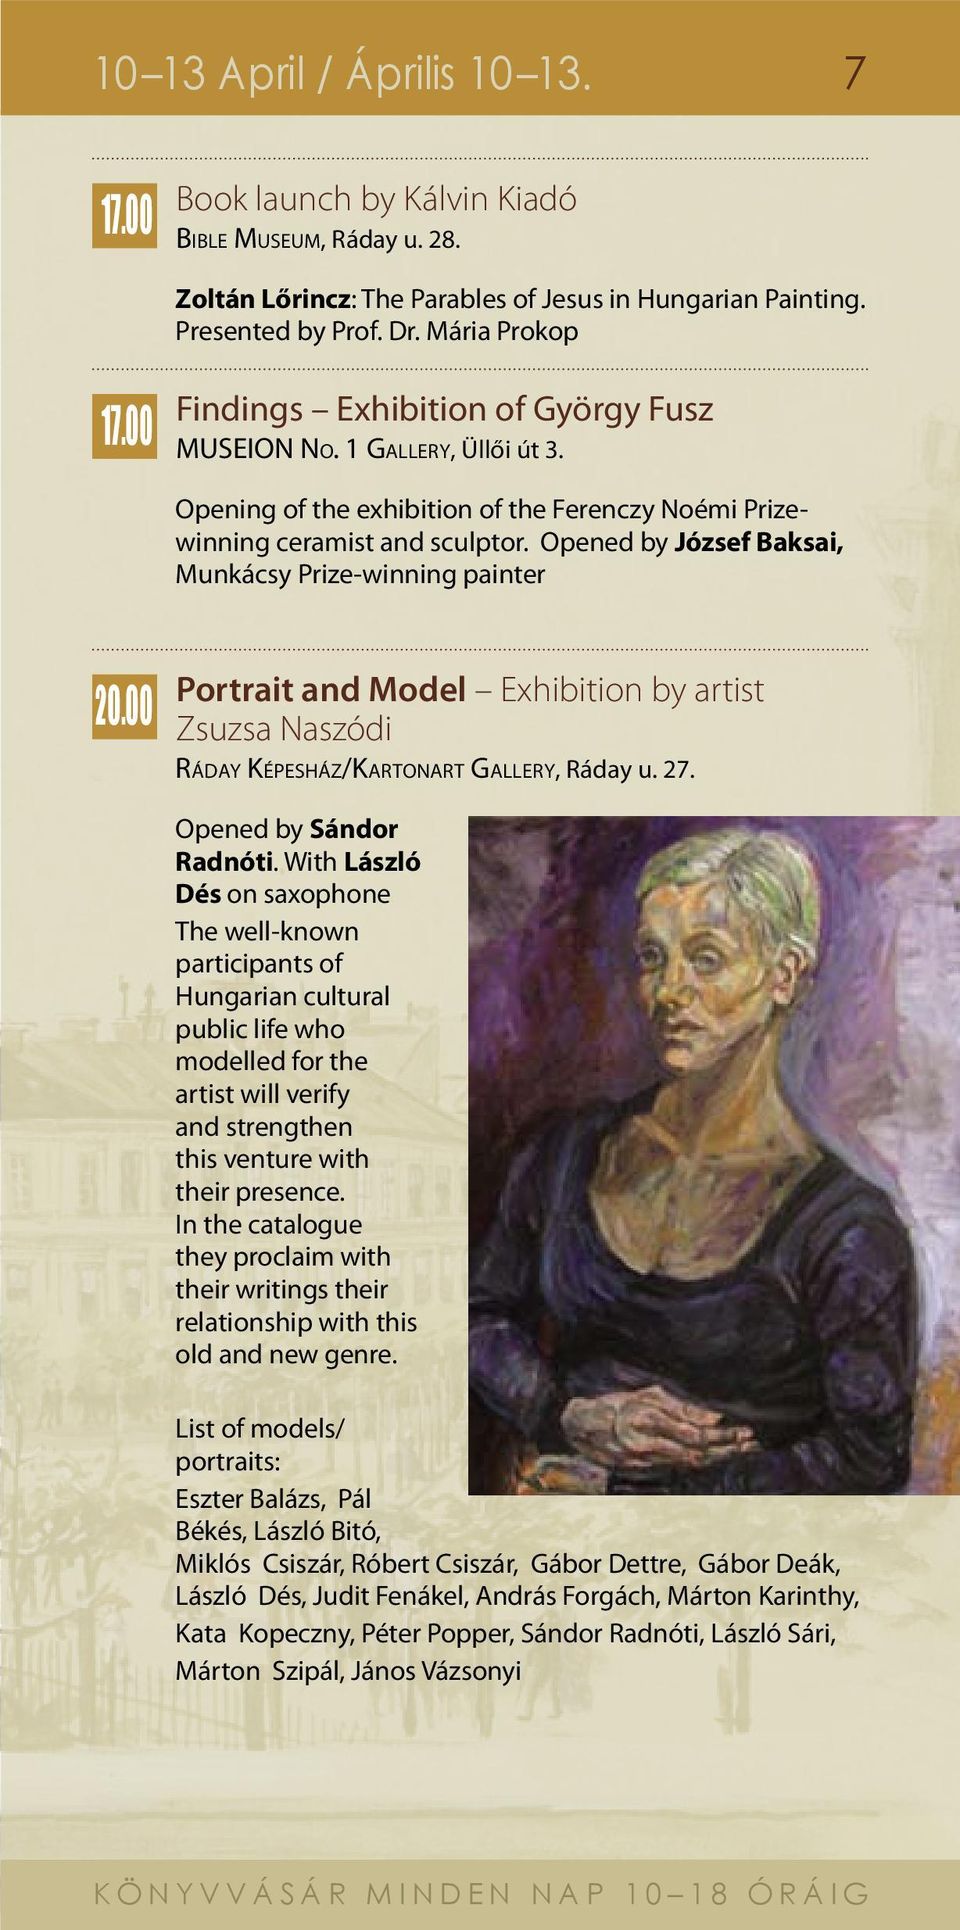 Opened by József Baksai, Munkácsy Prize-winning painter 20.00 Portrait and Model Exhibition by artist Zsuzsa Naszódi Rá d a y Képesház/Ka r t o n a r t Galler y, Ráday u. 27. Opened by Sándor Radnóti.